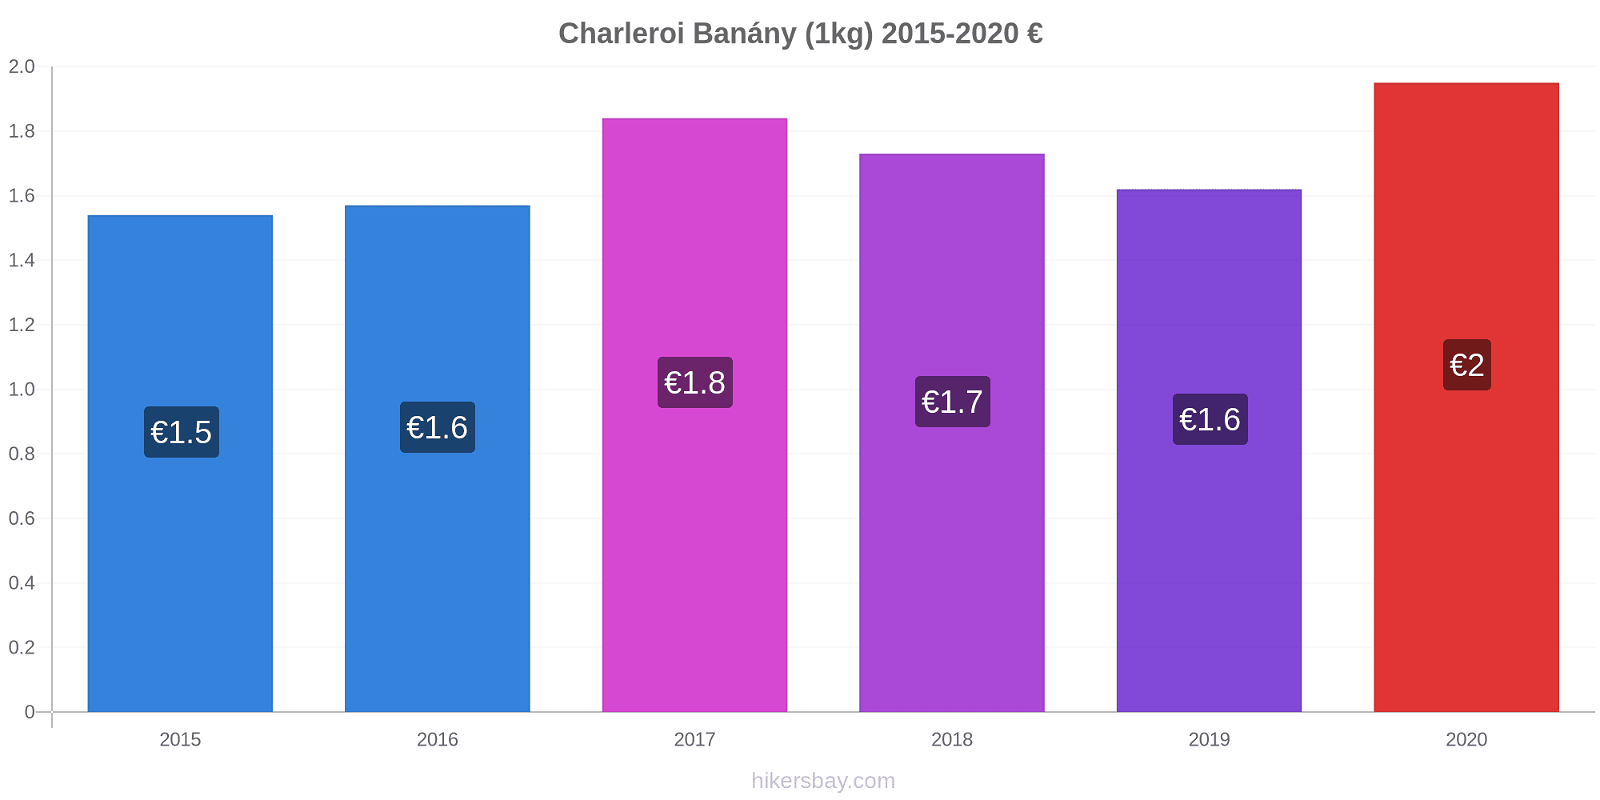 Charleroi změny cen Banány (1kg) hikersbay.com